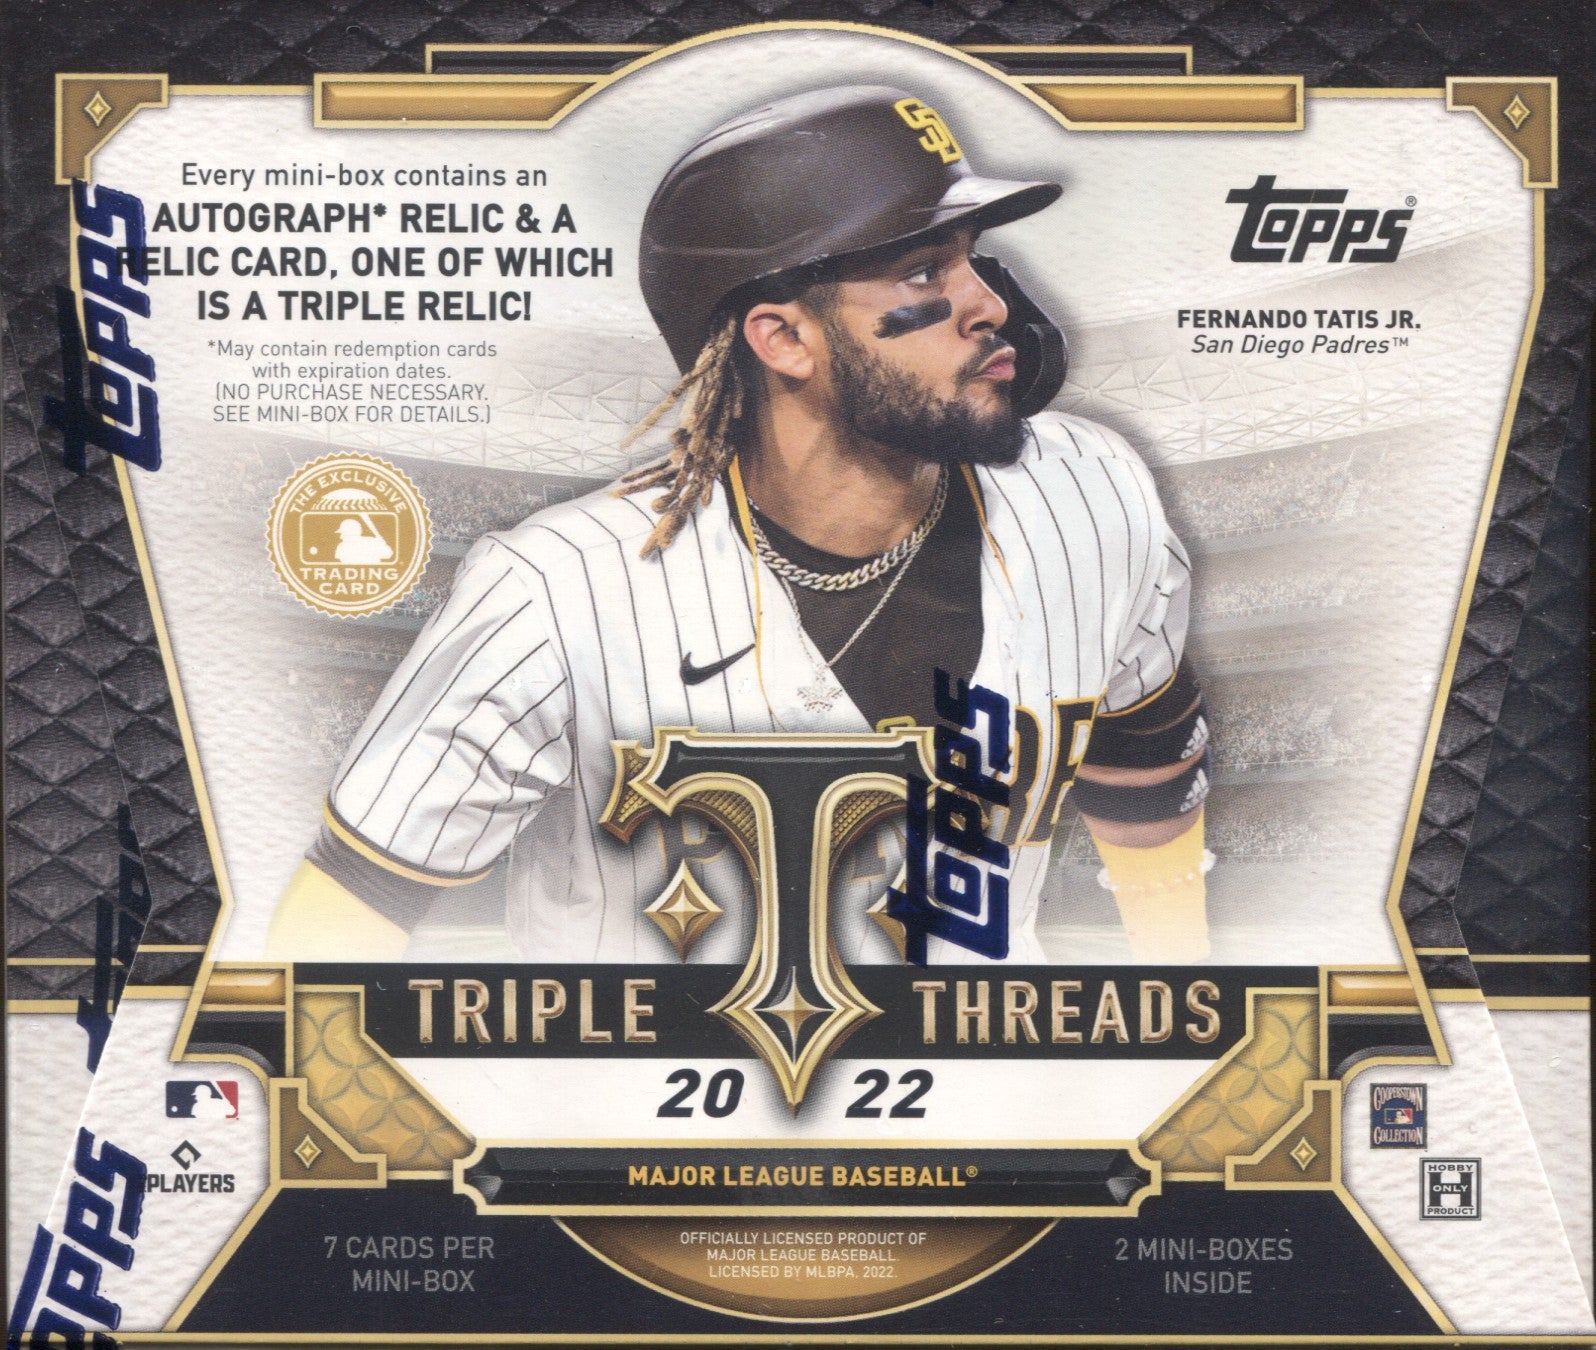 2020 Topps Triple Threads Baseball Hobby Box